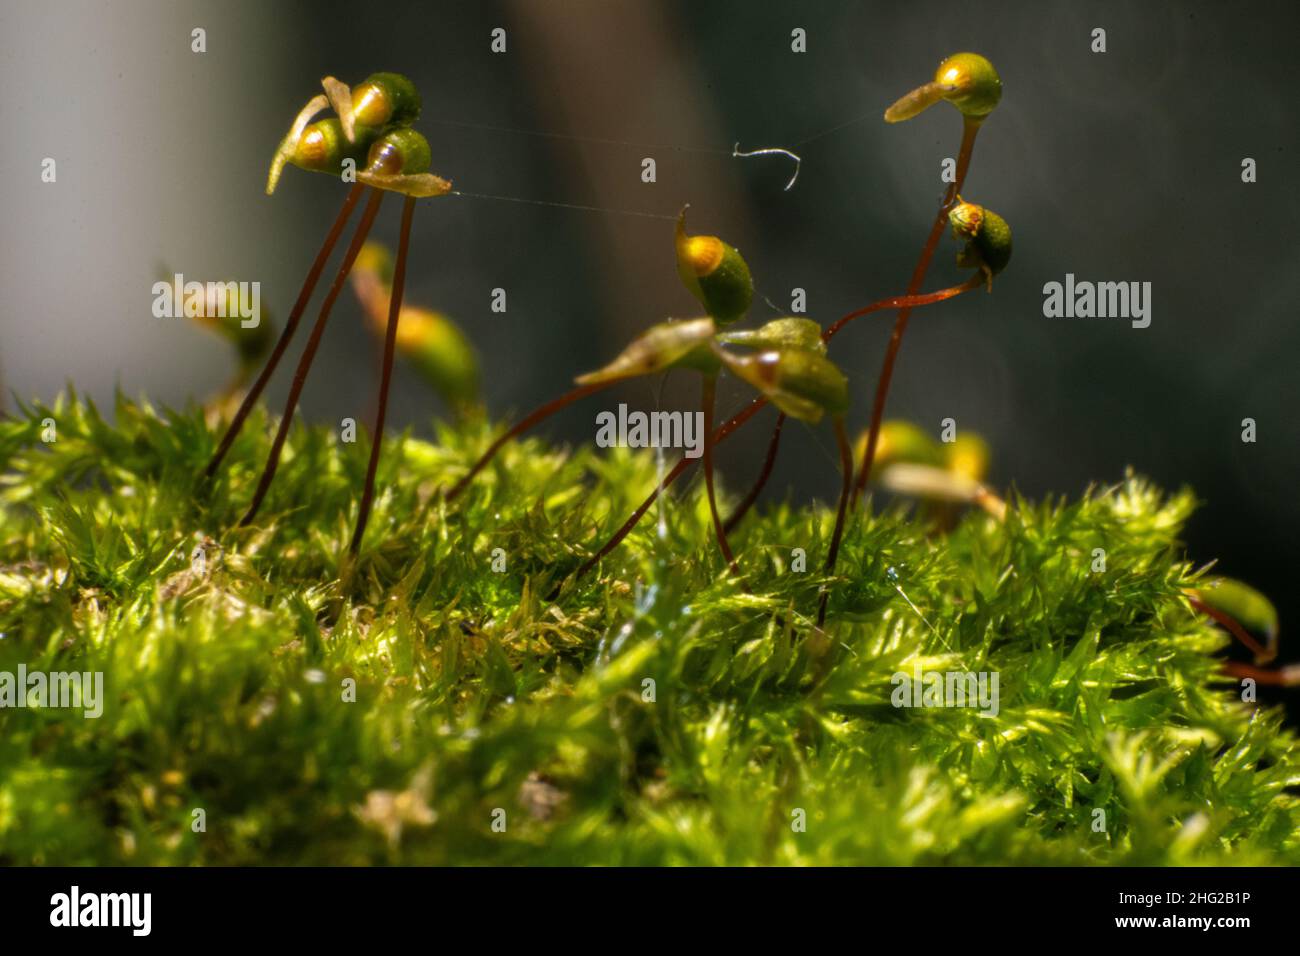 Moos Makro Fotografie Samen von Moos Nahaufnahme Bild. Wilde Pflanzen im Freien, oh feuchte Stellen. Stockfoto